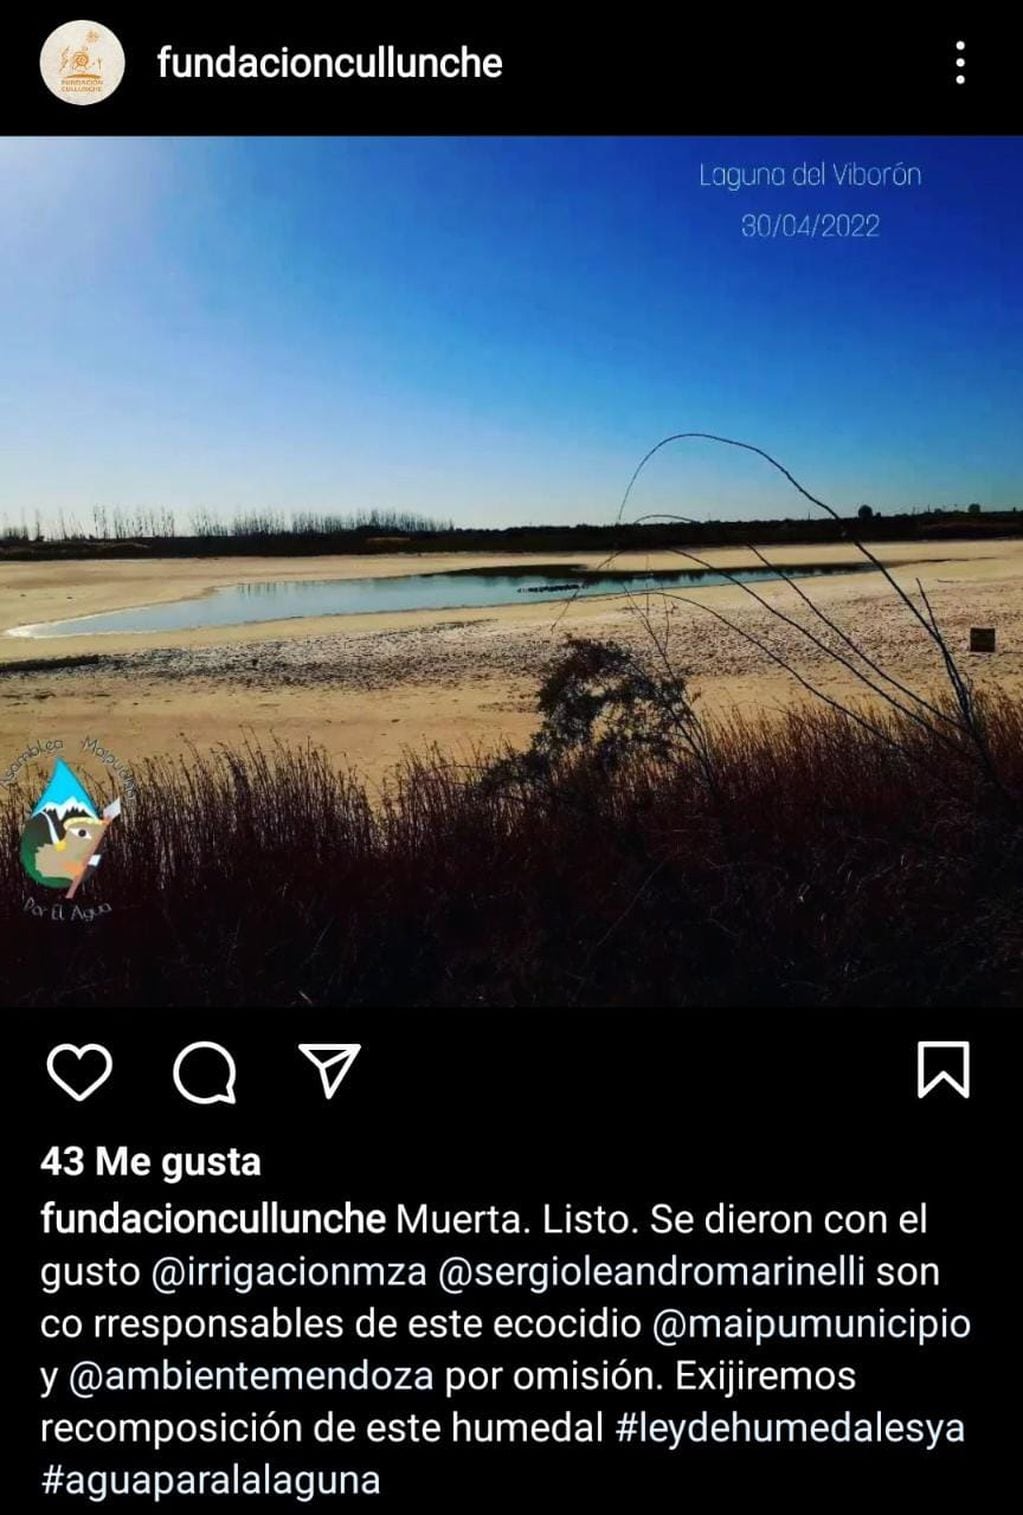 Reclamo de la Fundación Cullunche por la sequía de la Laguna del Viborón.